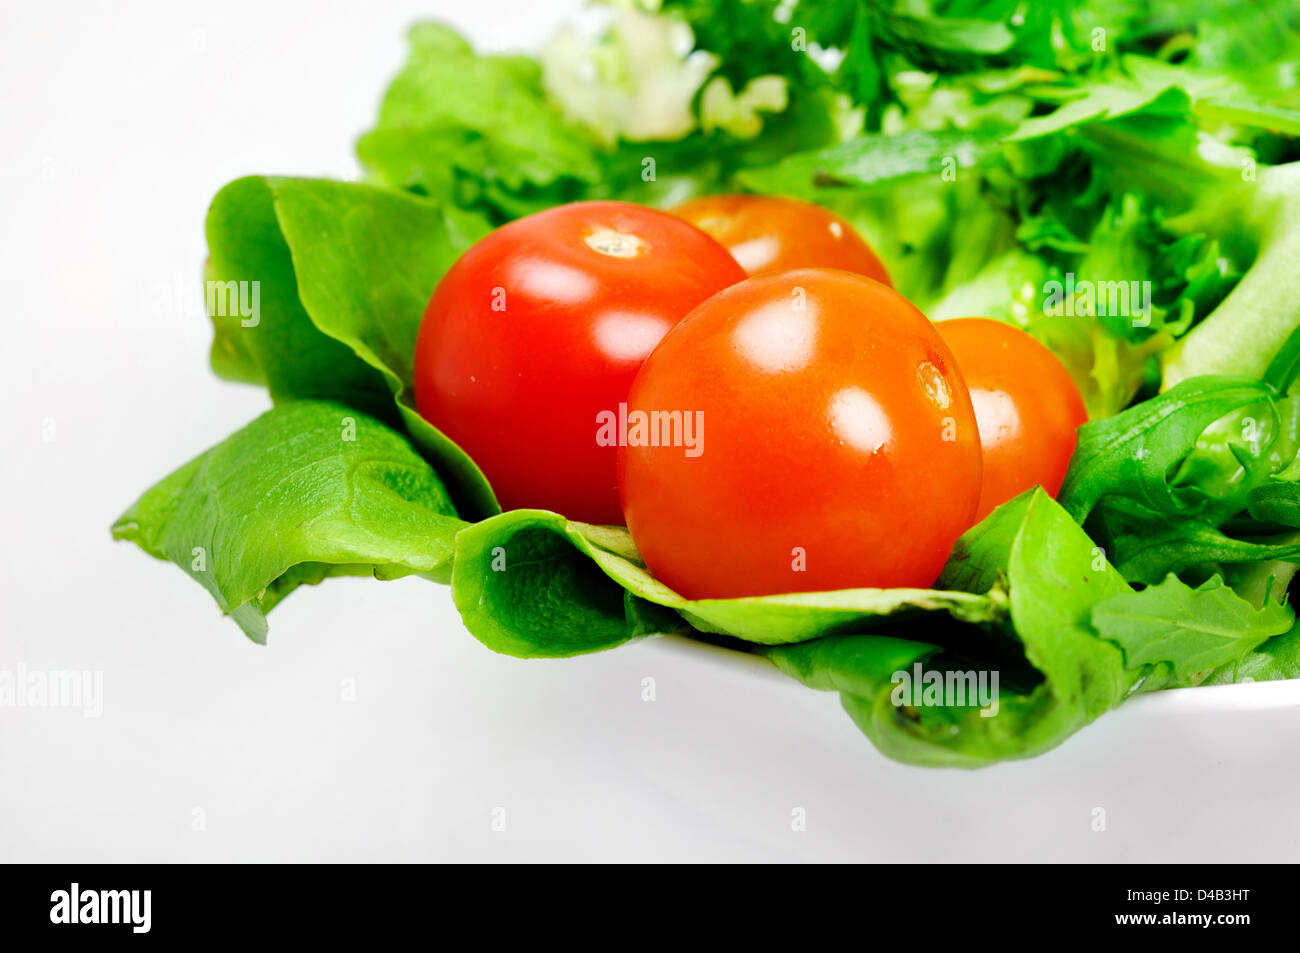 Plaque avec salade de légumes en rondelles Banque D'Images